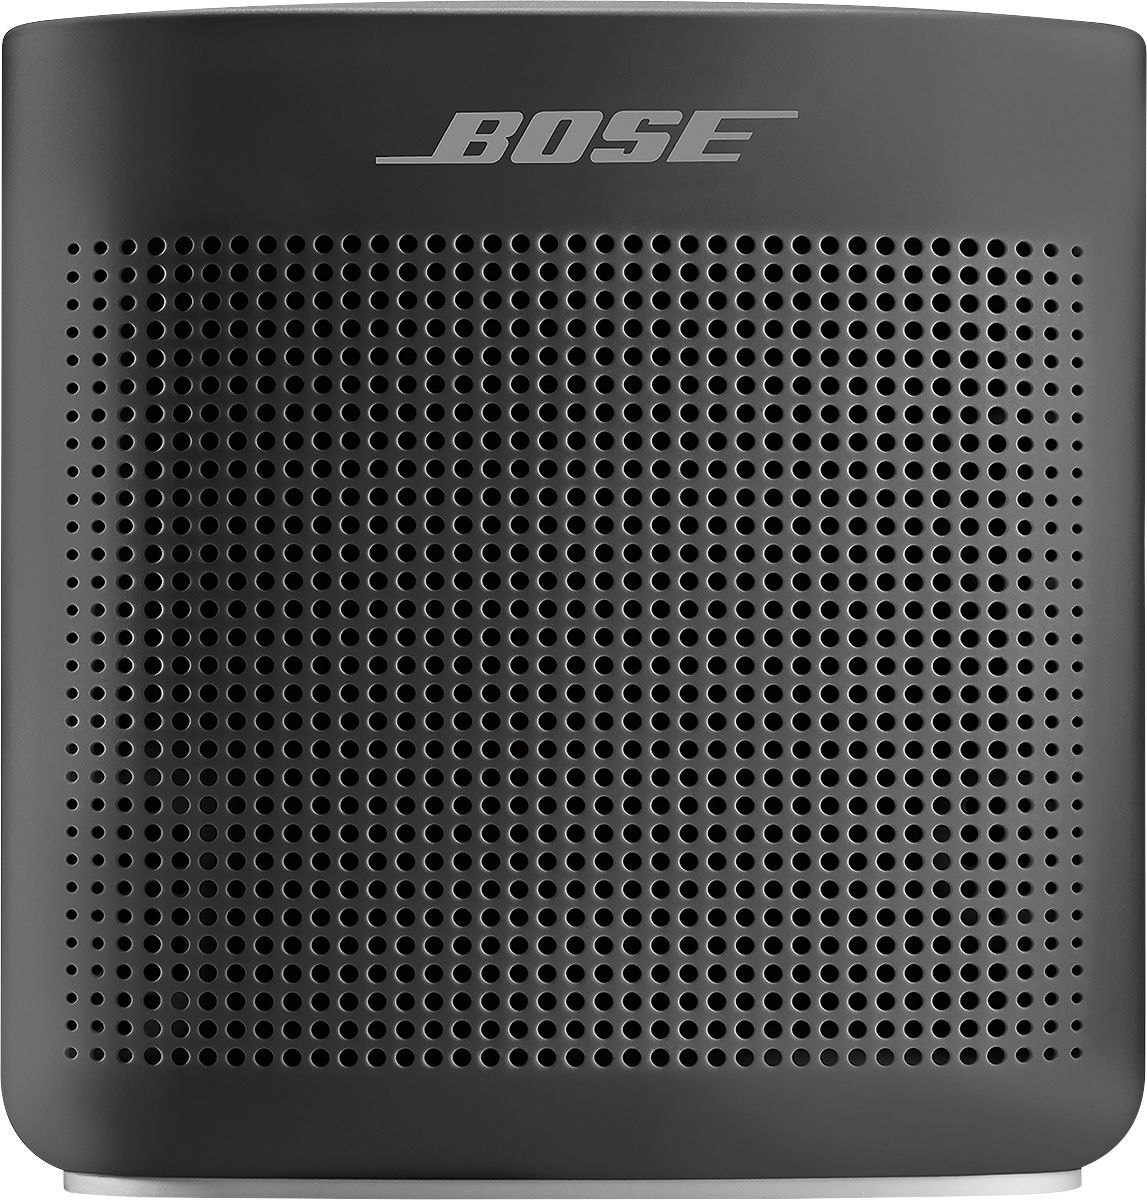 Bose SoundLink Color Portable Bluetooth Speaker II Soft Black 752195-0100 - Best Buy | Best Buy U.S.